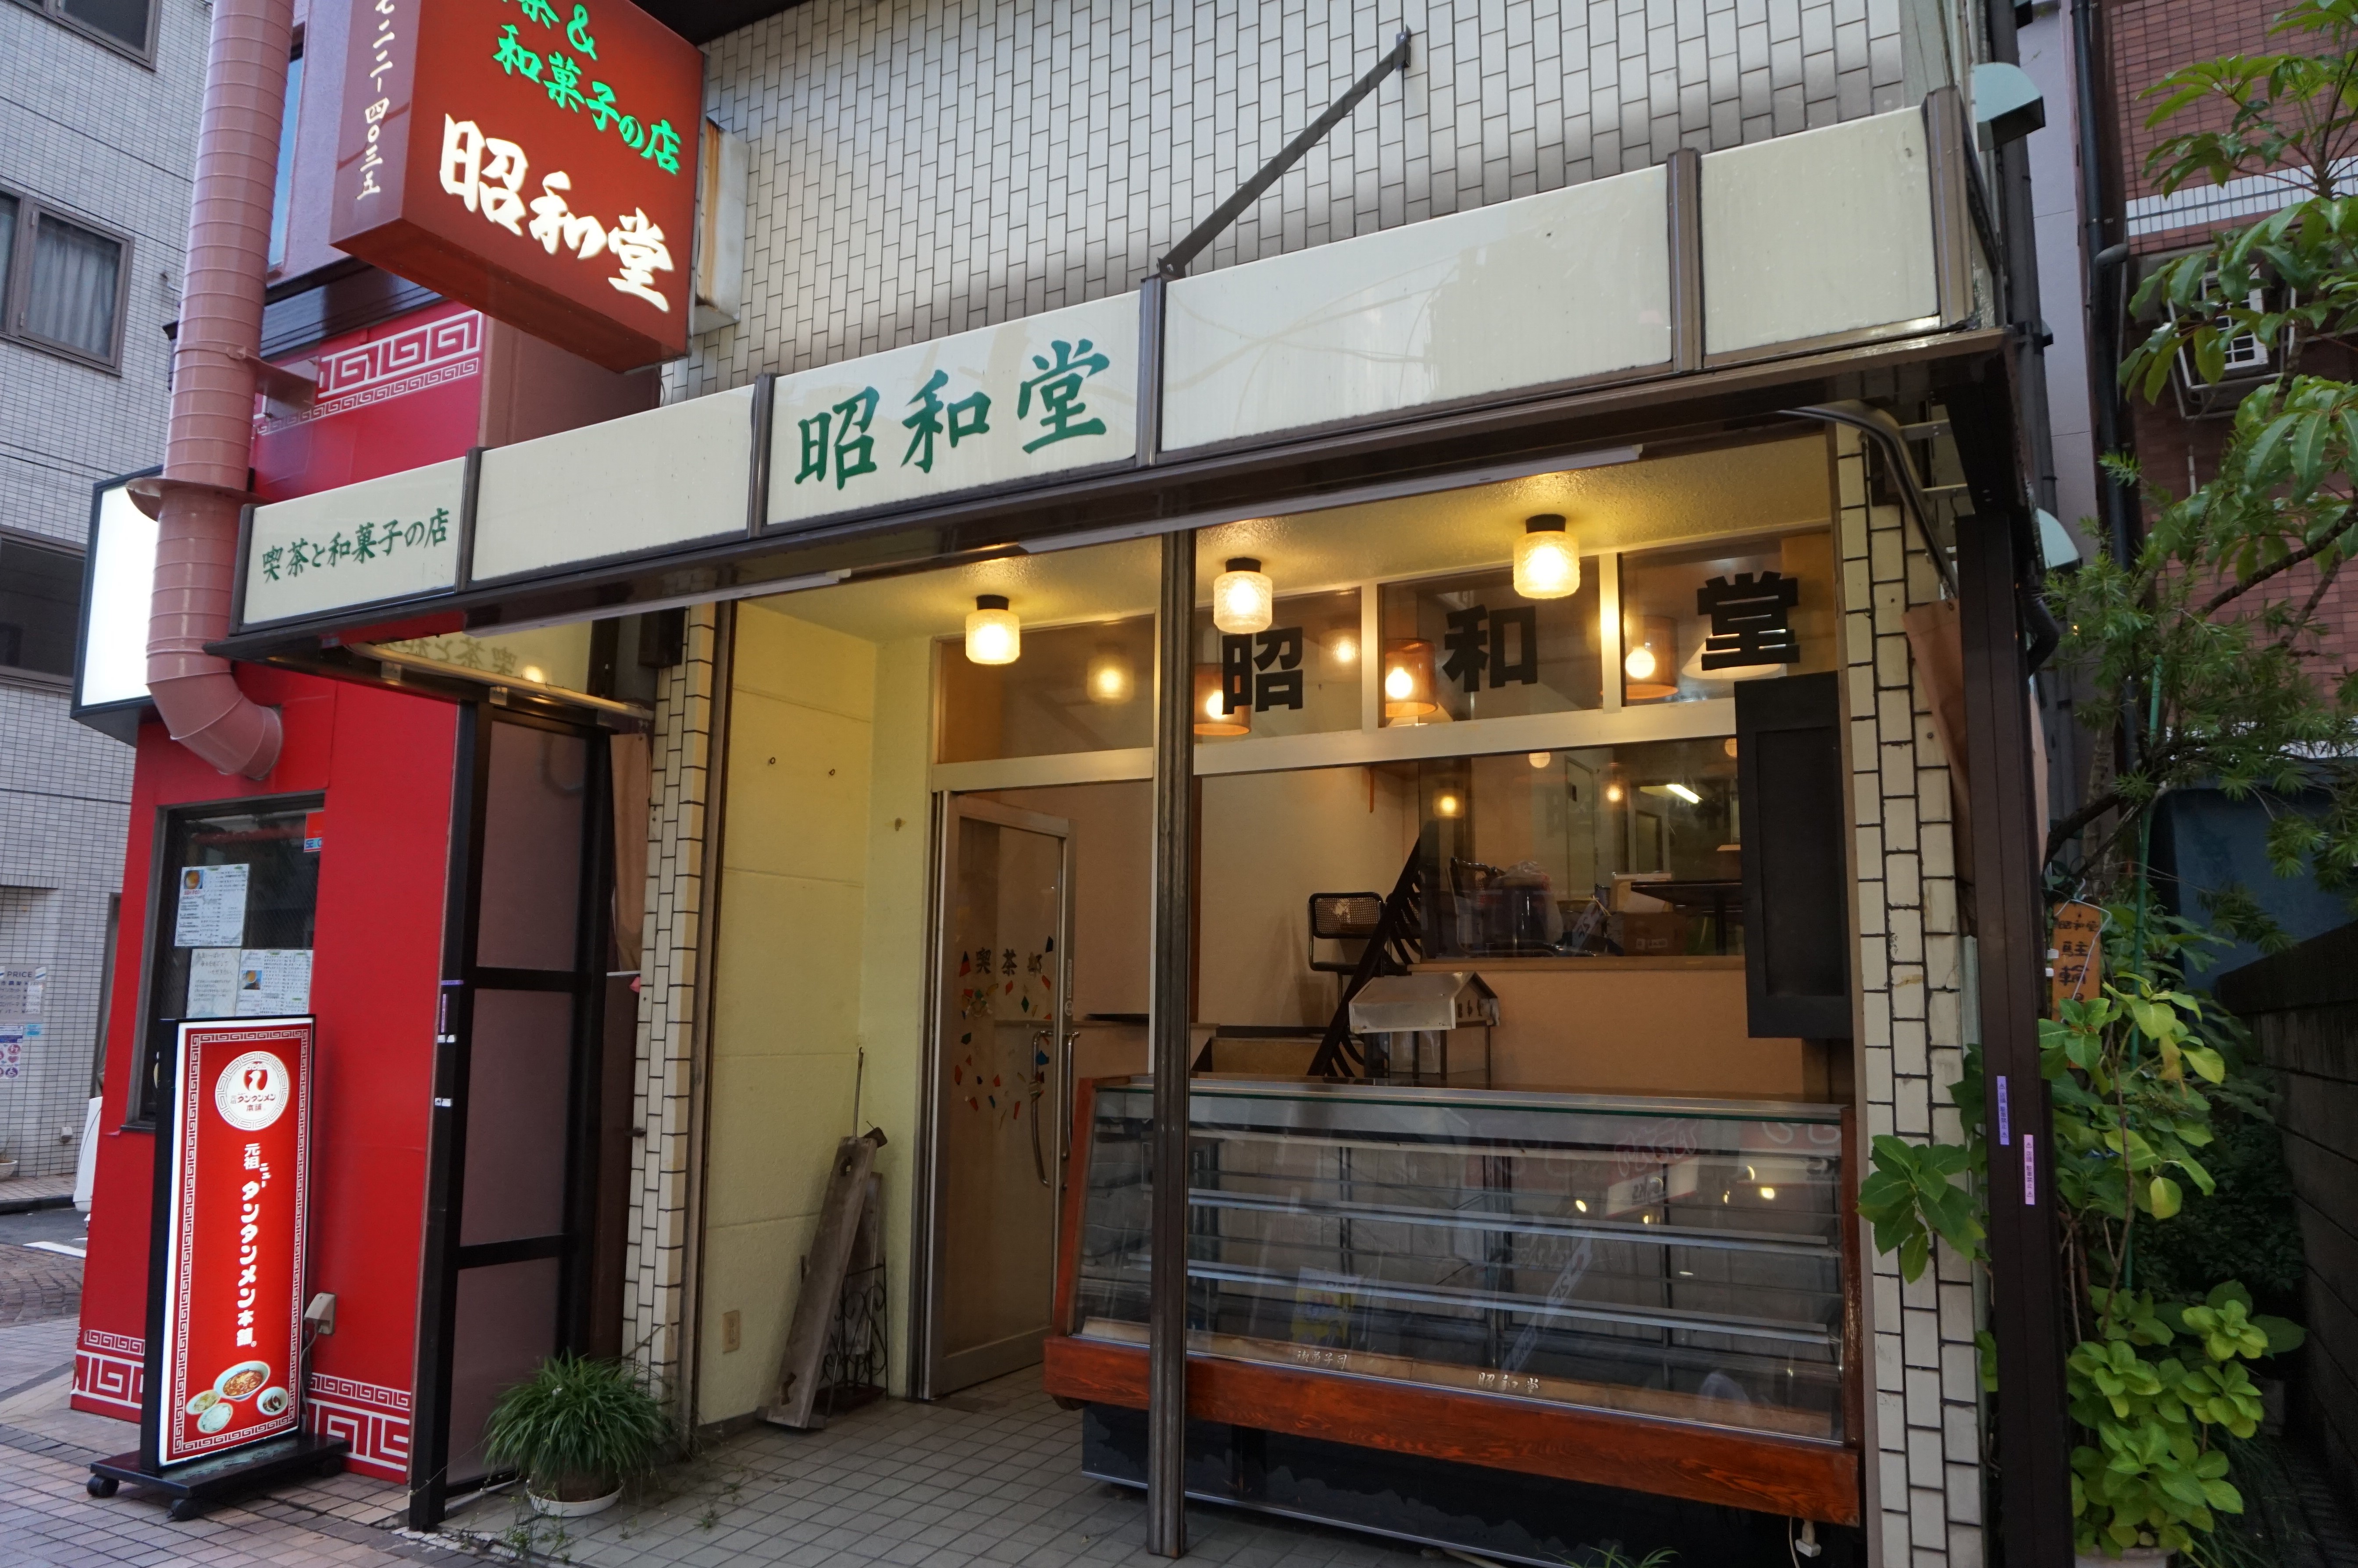 『孤独のグルメ』にも登場した、新丸子の喫茶と和菓子のお店『昭和堂』